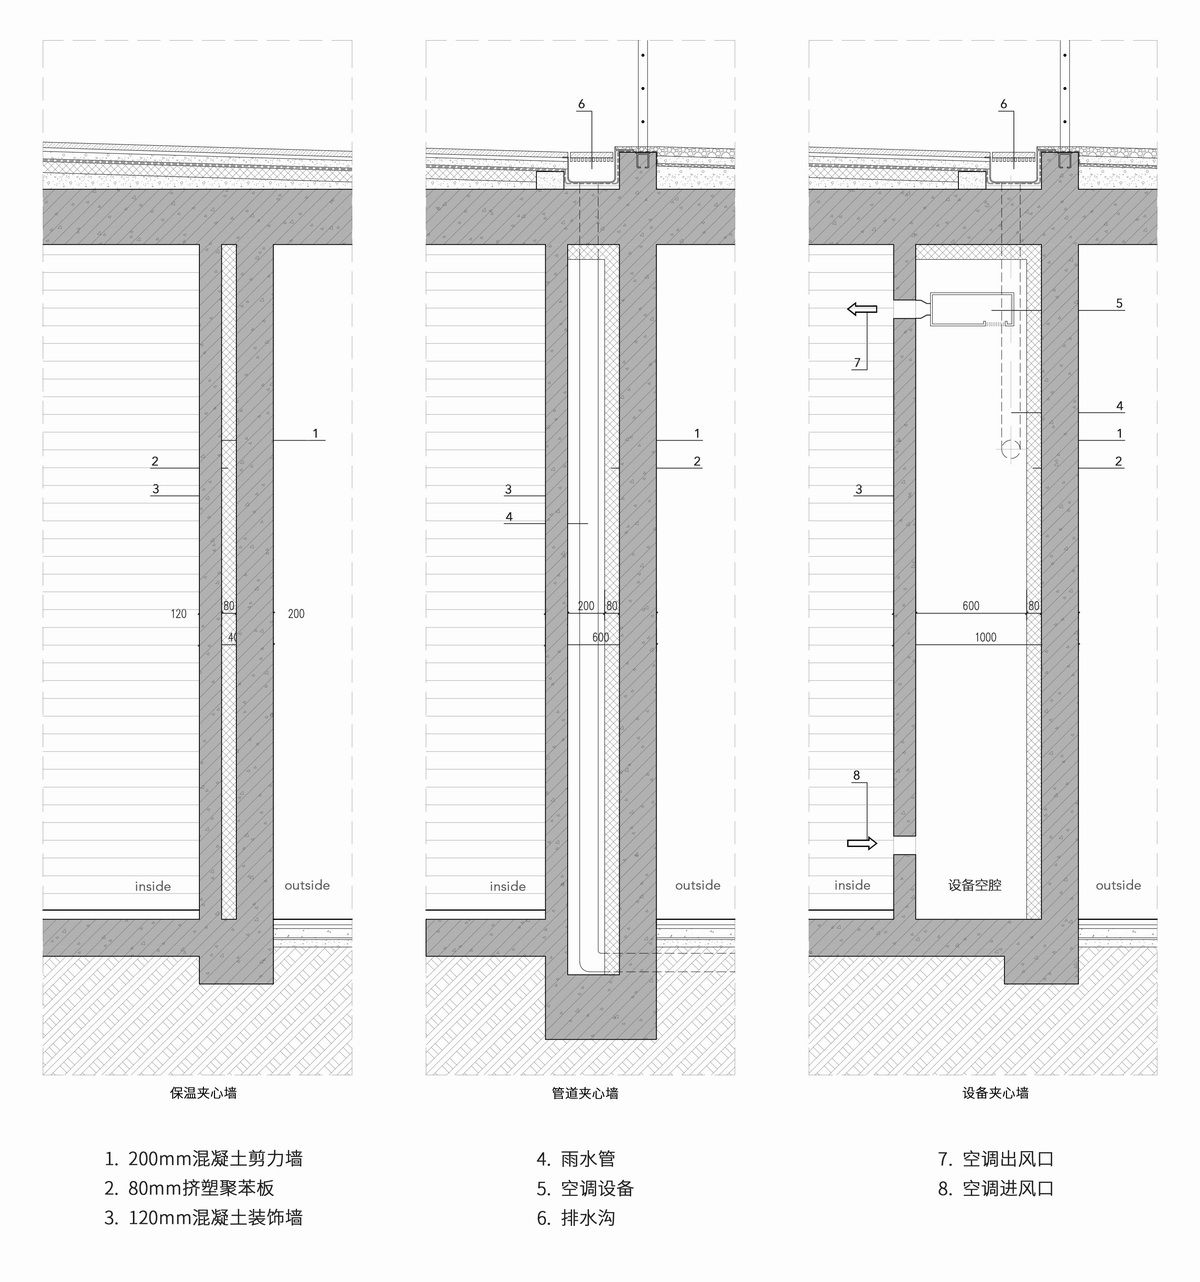 调整大小 06混凝土夹心墙系统concrete ornamental wall system.jpg